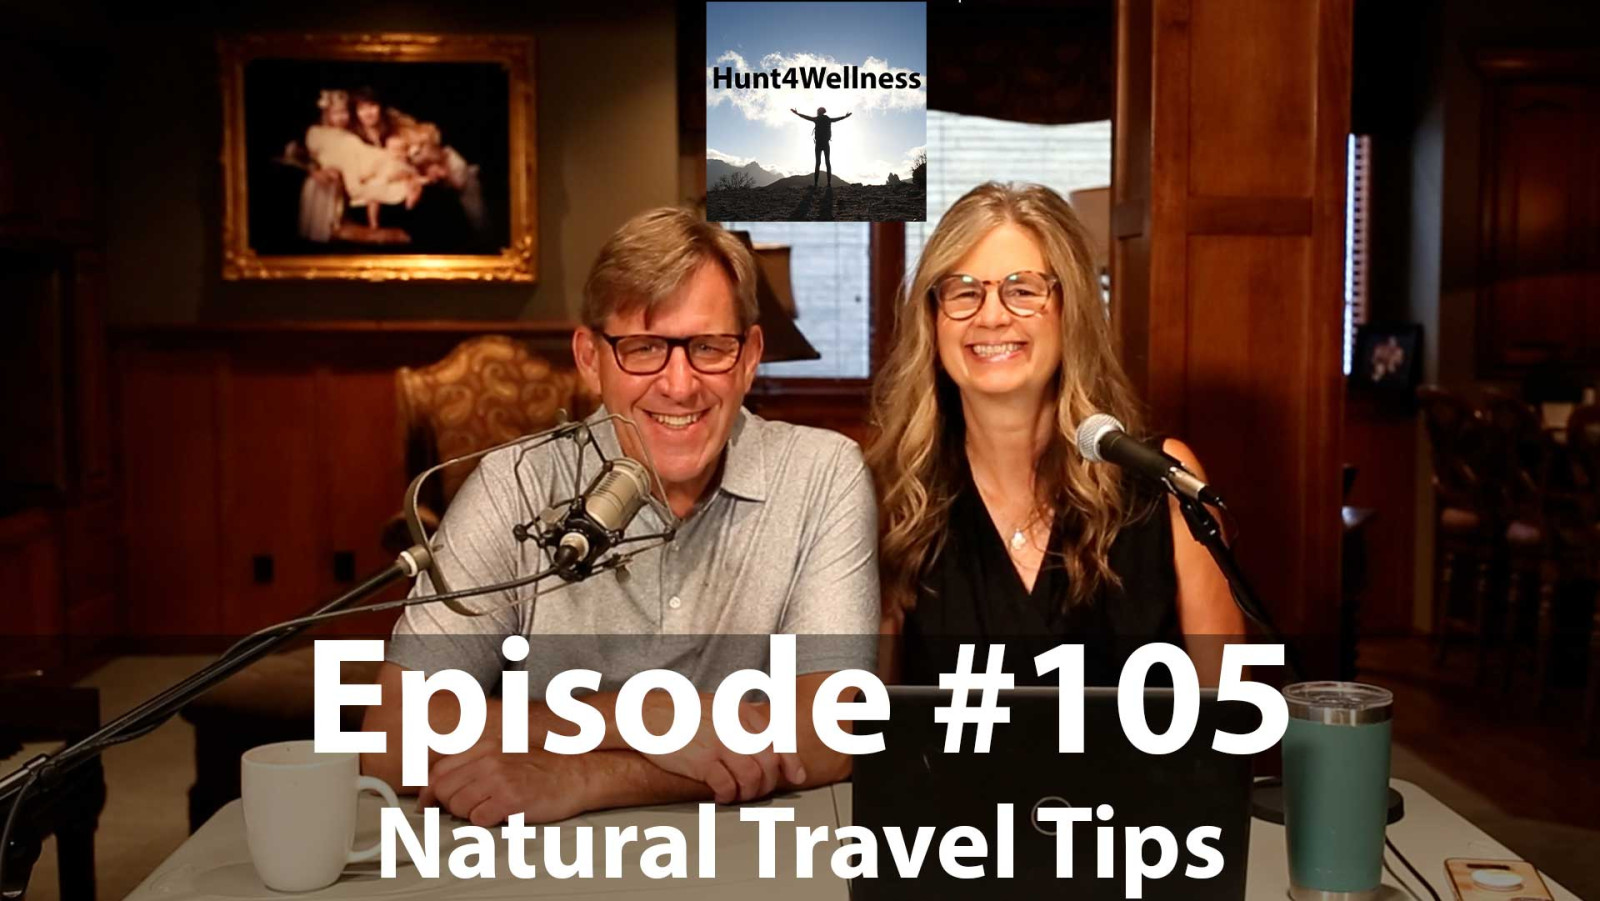 Episode #105 - Natural Travel Tips